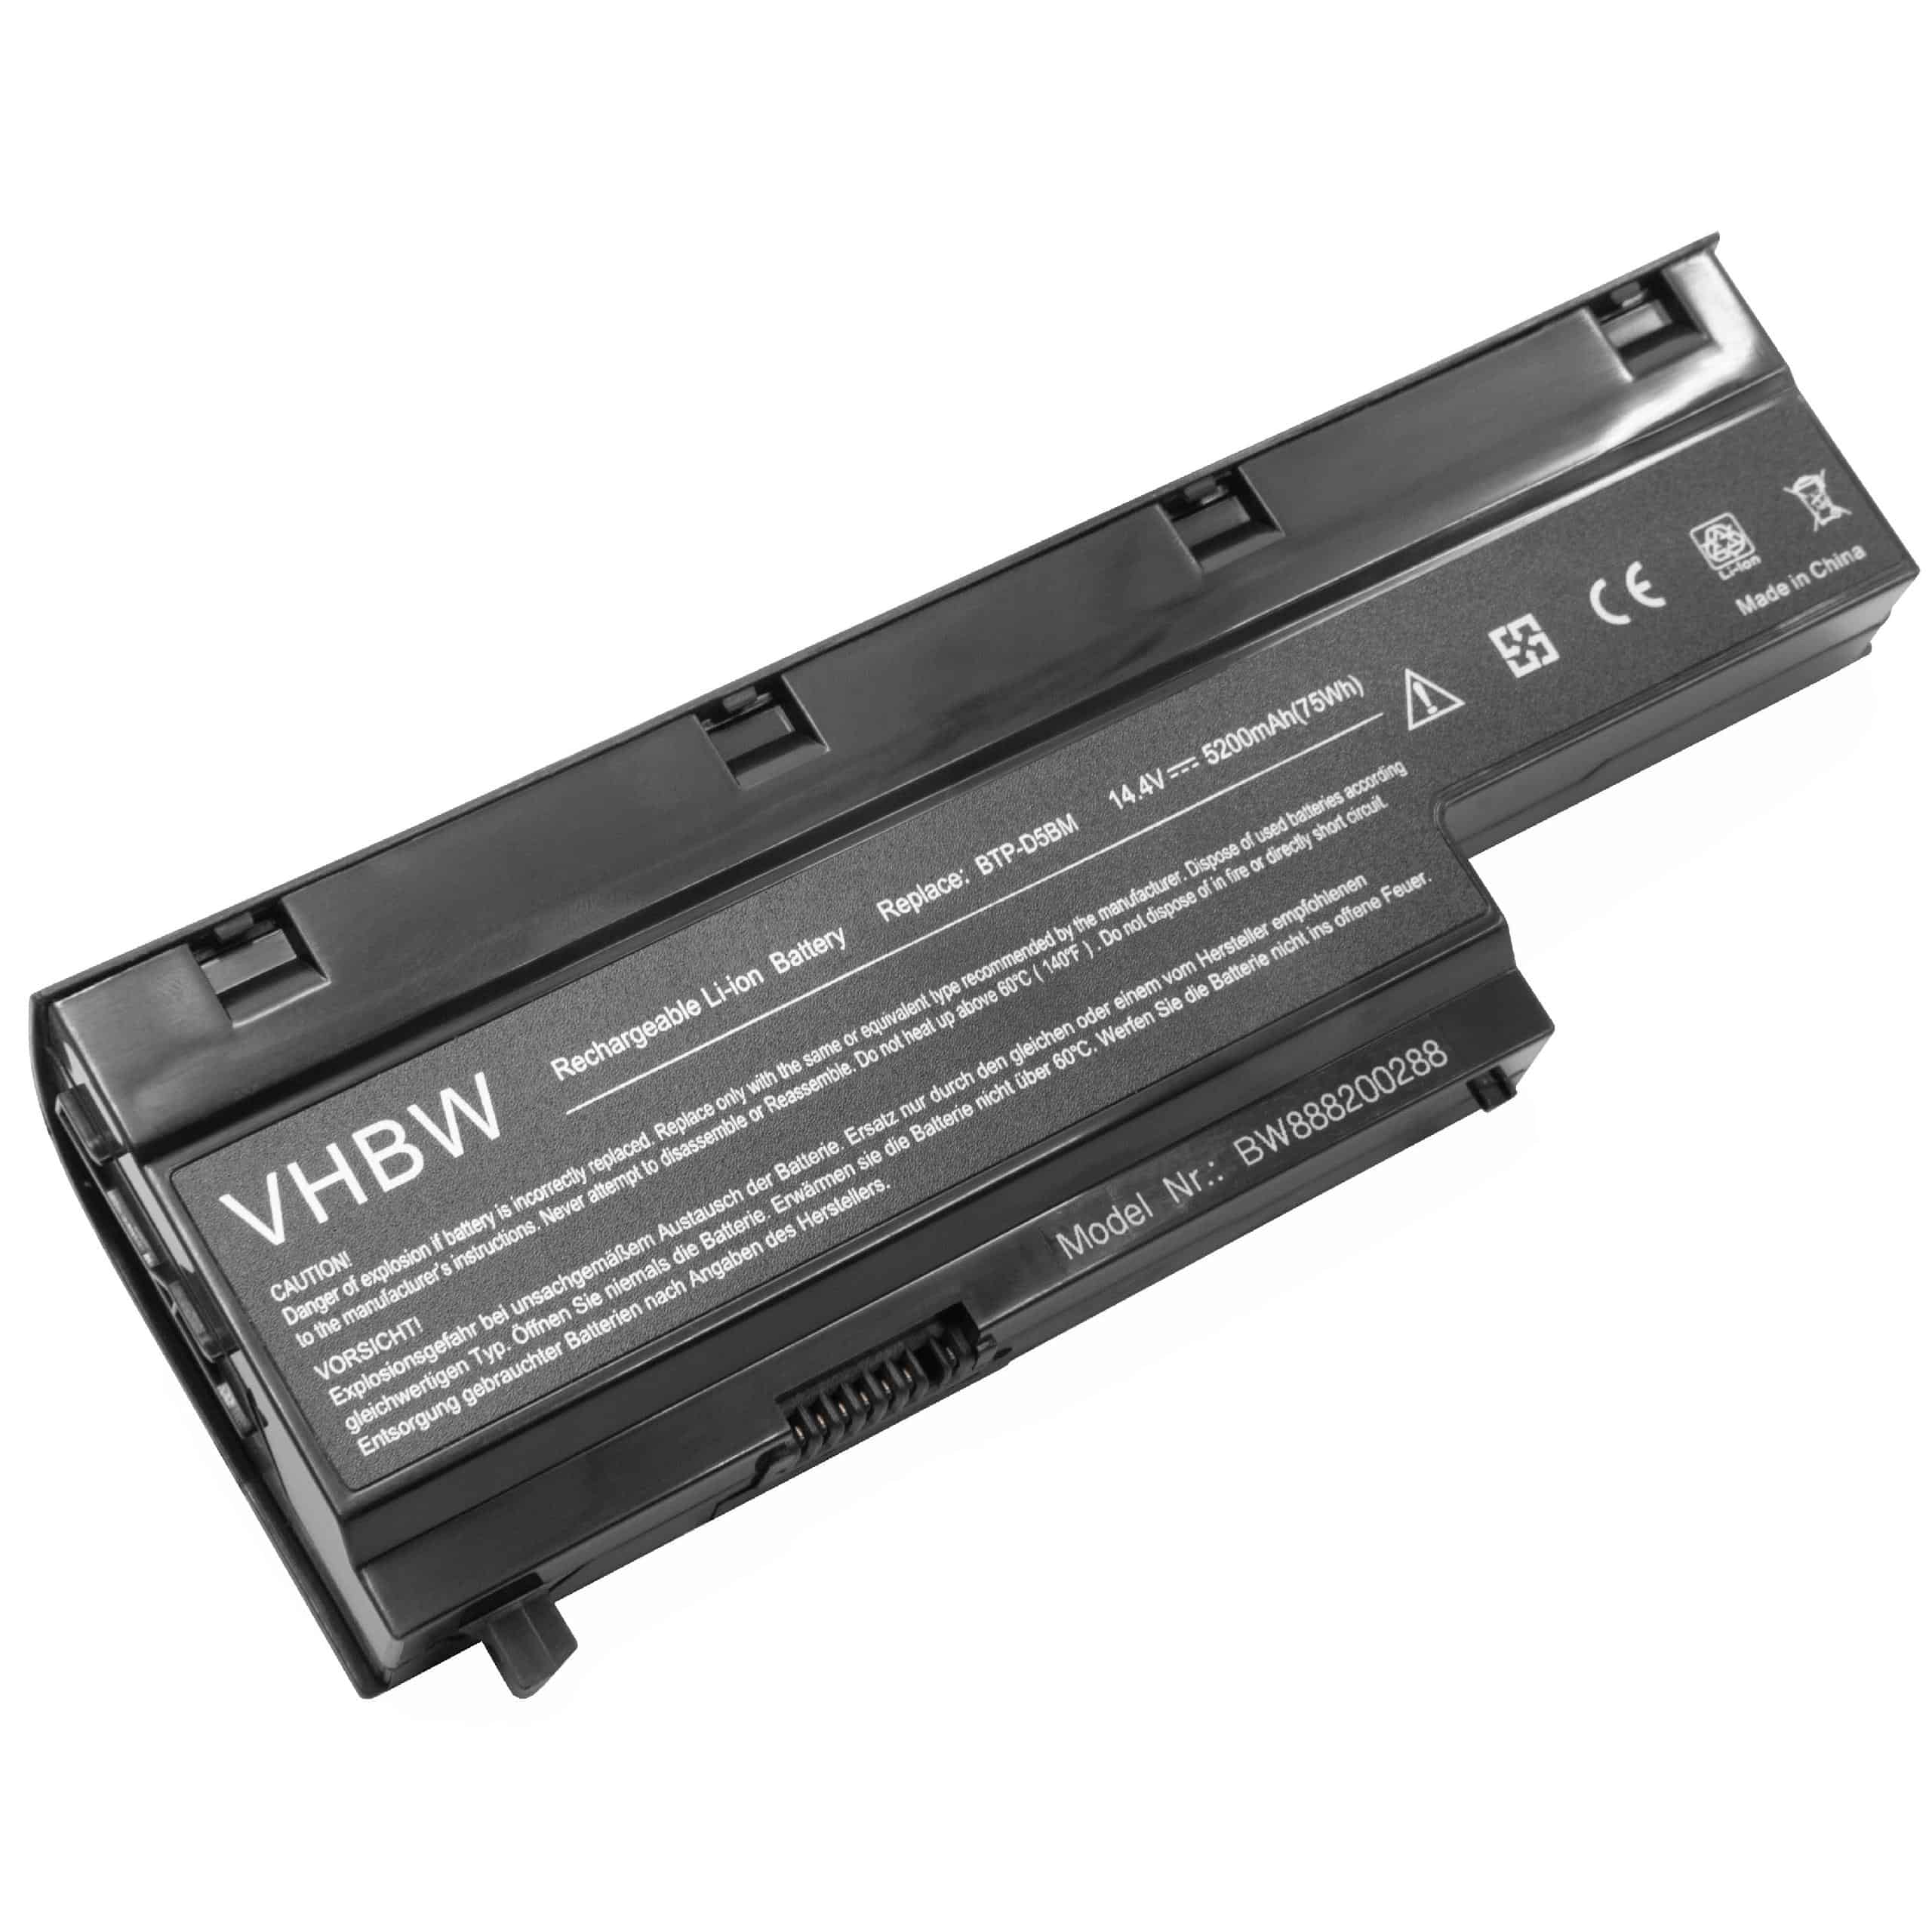 Batterie remplace Medion 40029778, 40029779, BTP-D4BM pour ordinateur portable - 5200mAh 14,4V Li-ion, noir